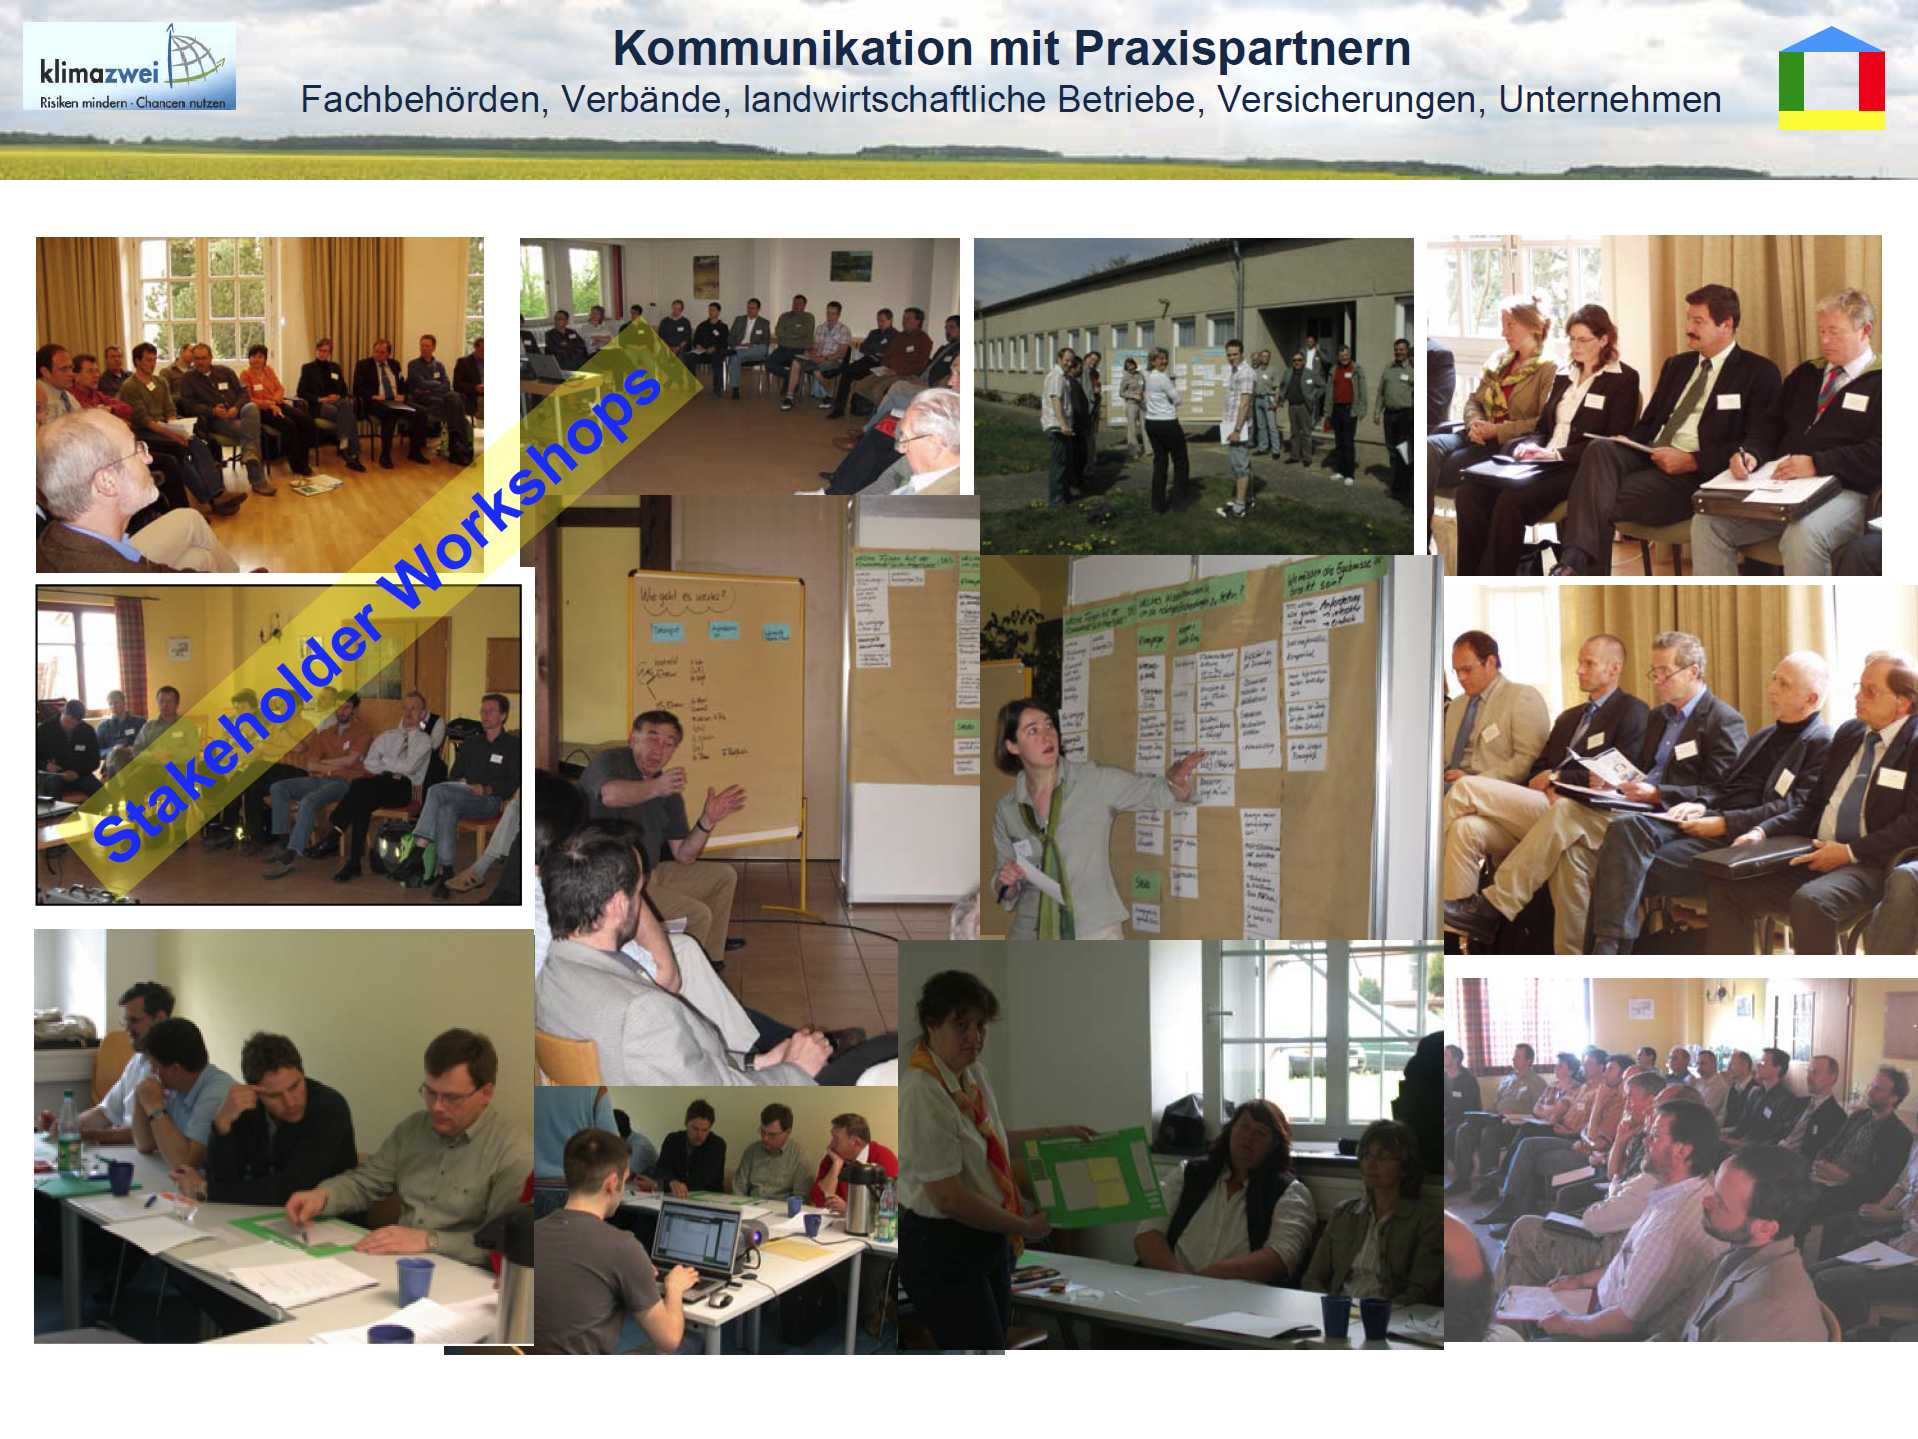 10/19 - Workshops mit Praxispartnern